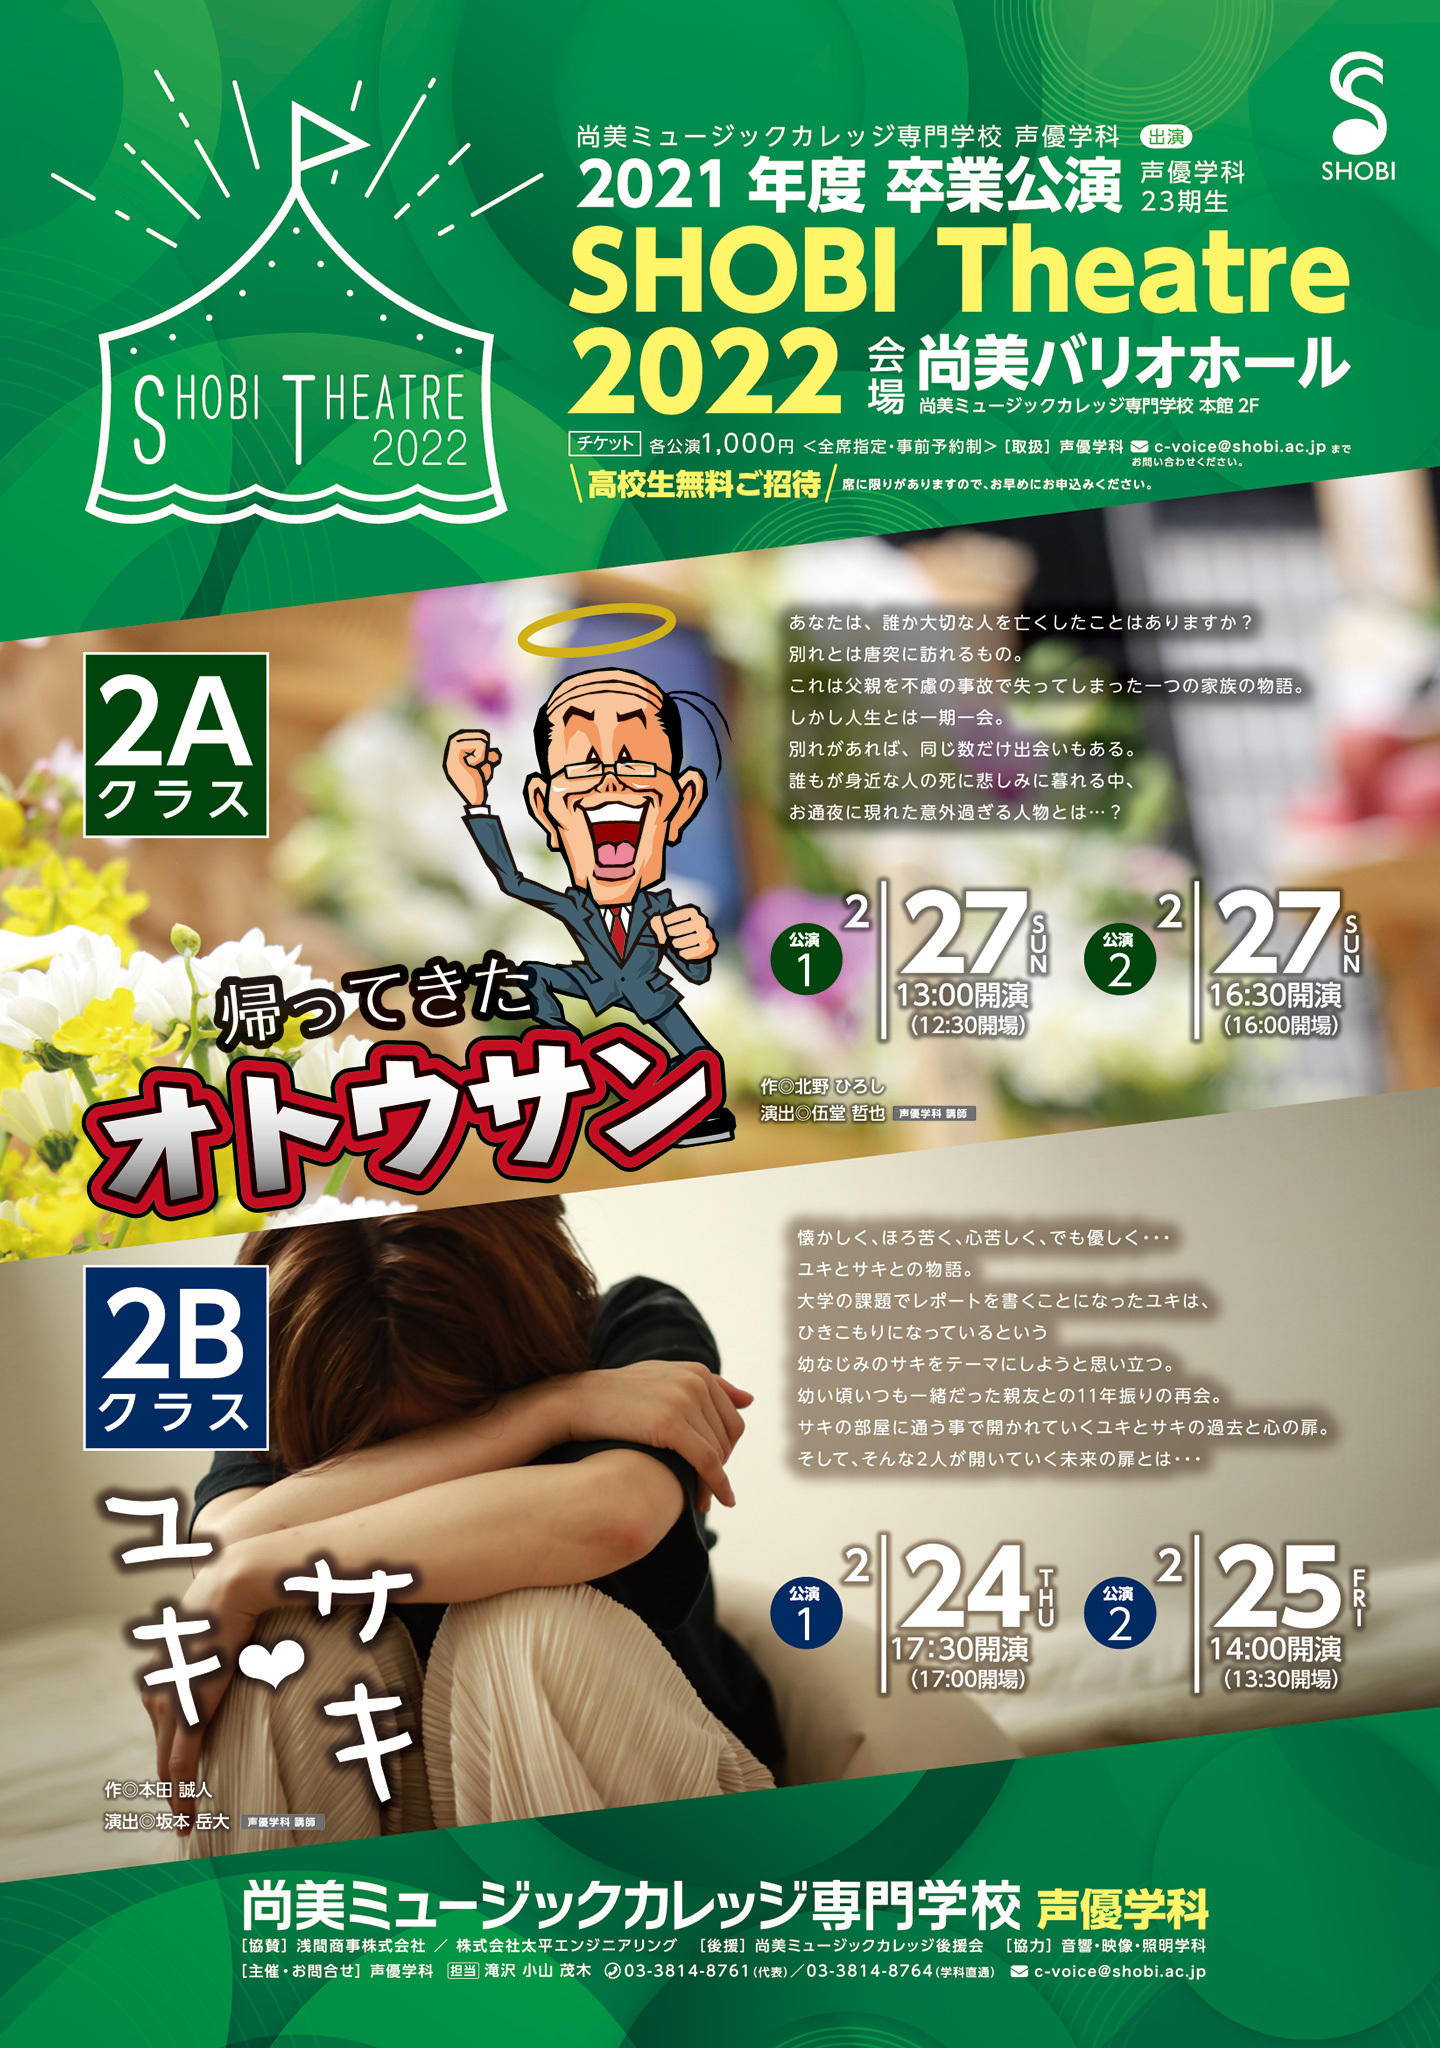 【2月24日・25日・27日開催】2021年度声優学科第23期生2年次卒業公演「SHOBI THEATRE 2022」